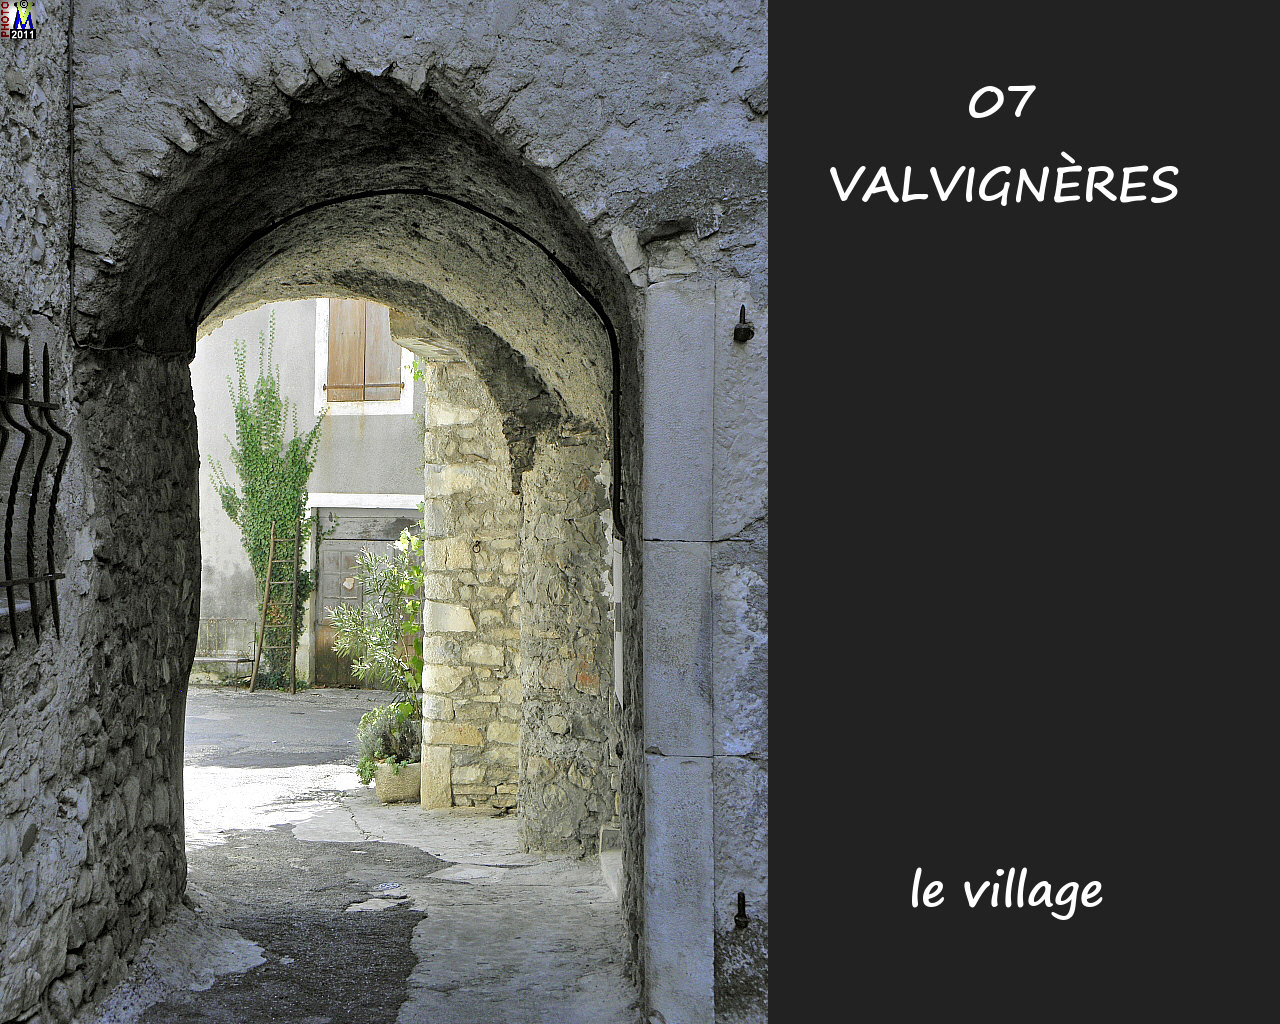 07VALVIGNERES_village_124.jpg